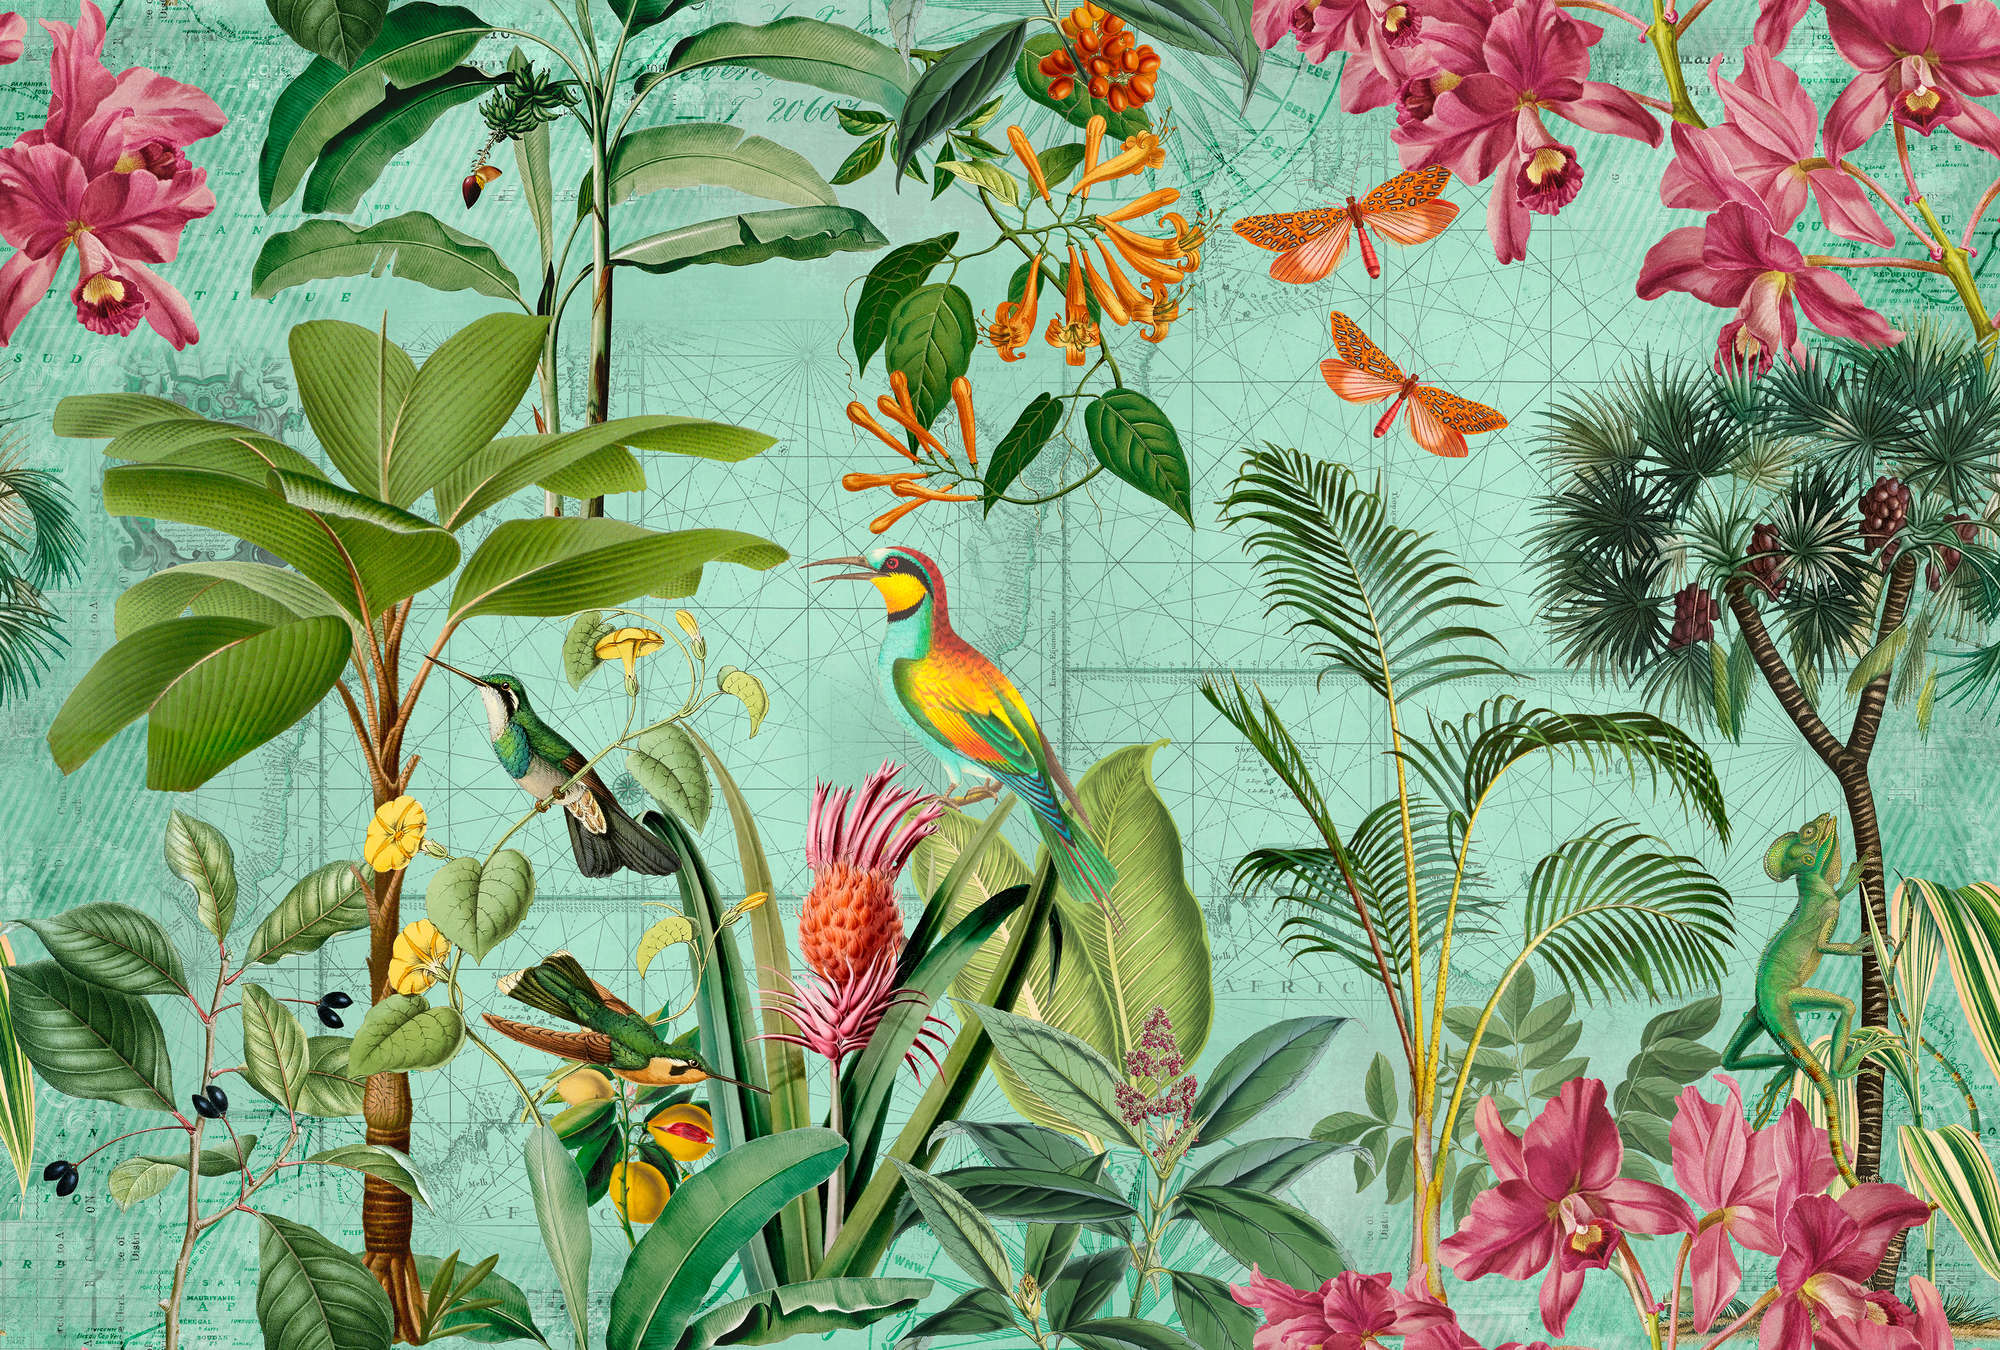             Fotomurali colorato della giungla con alberi, fiori e animali
        